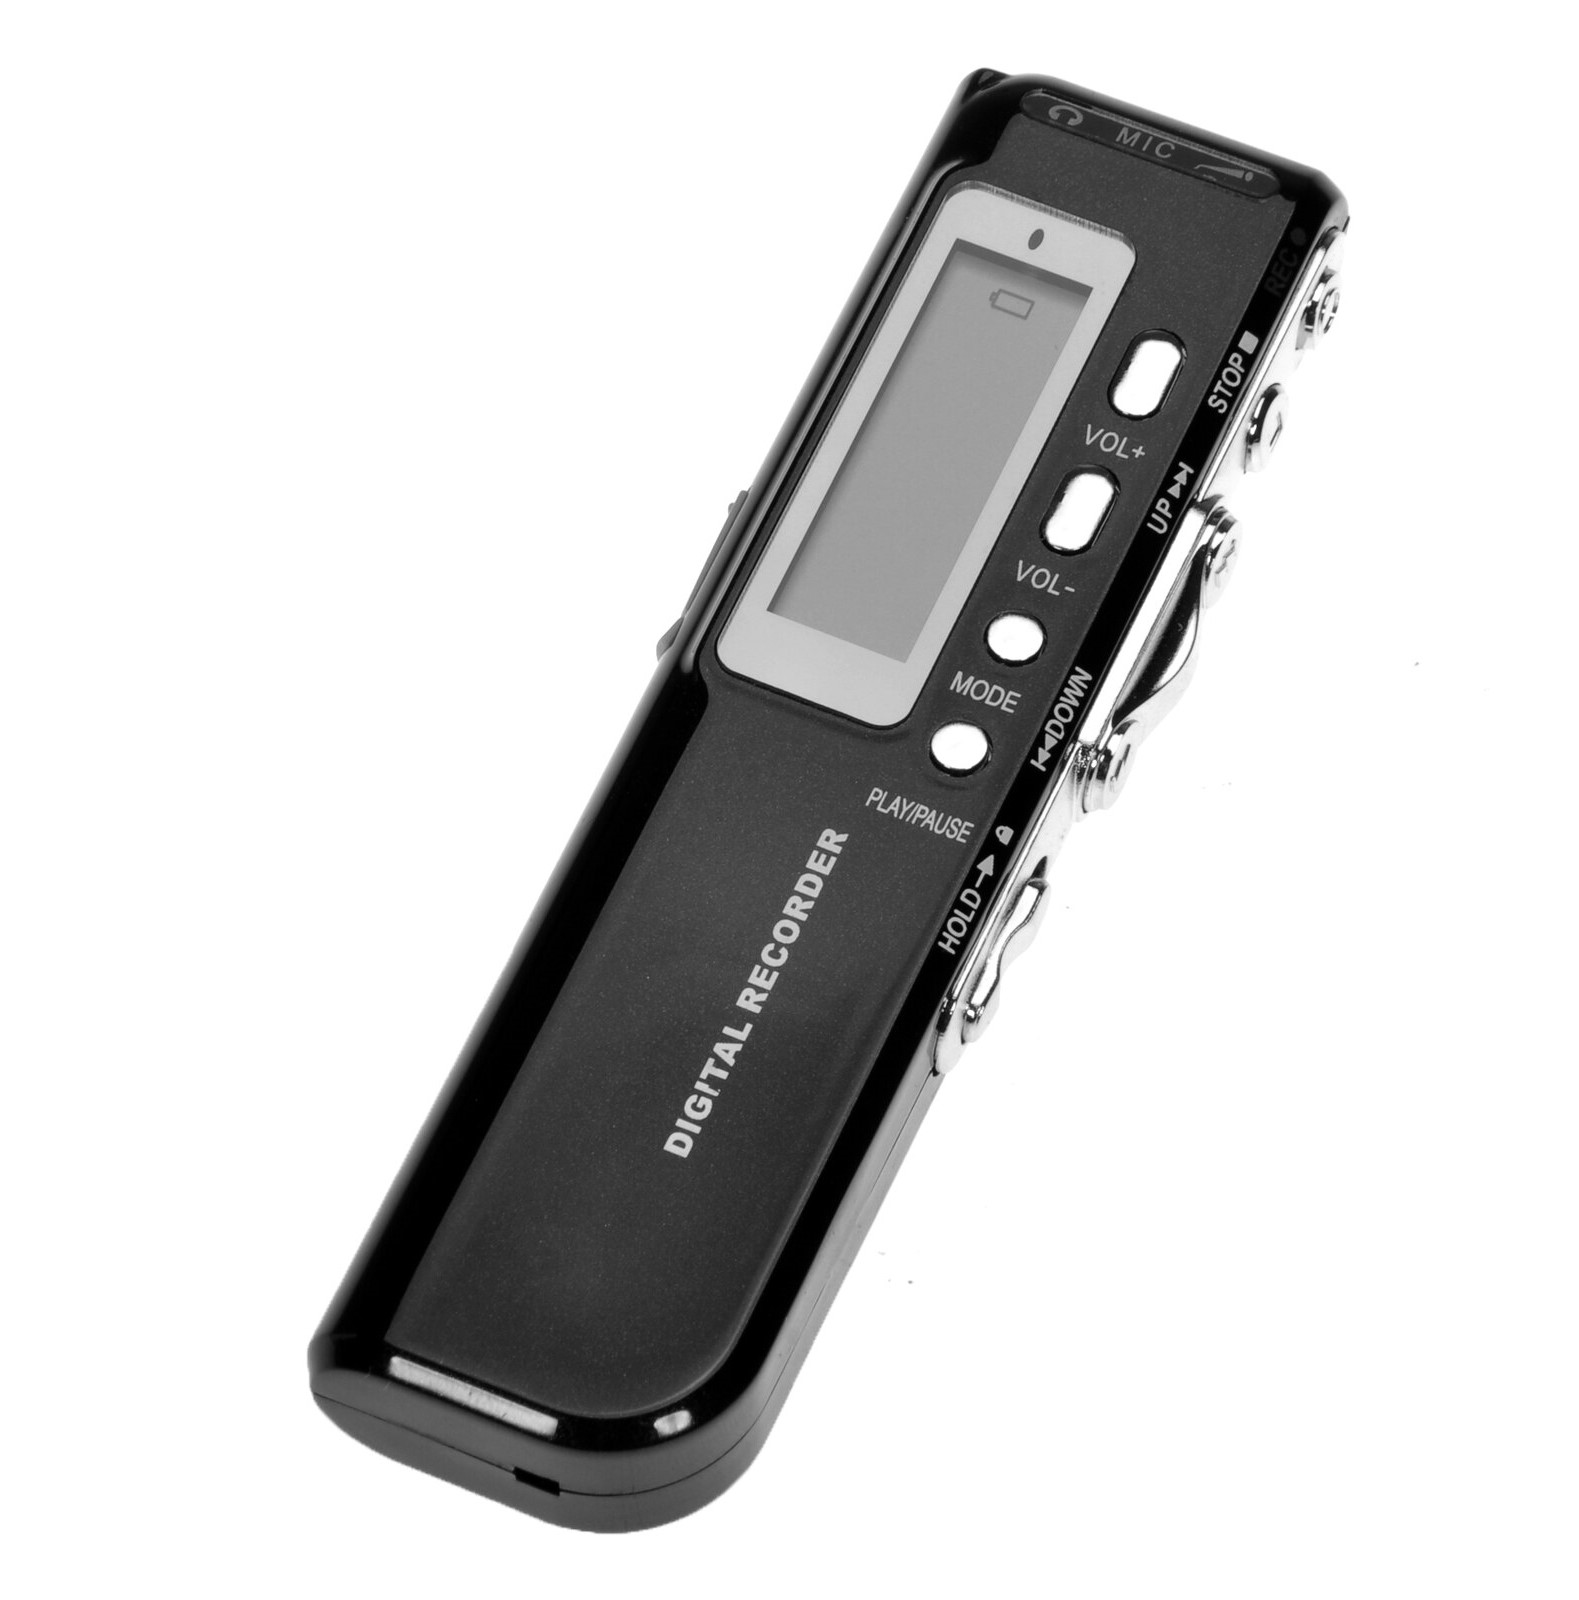 ディクタフォン-MP3デジタルボイスレコーダー